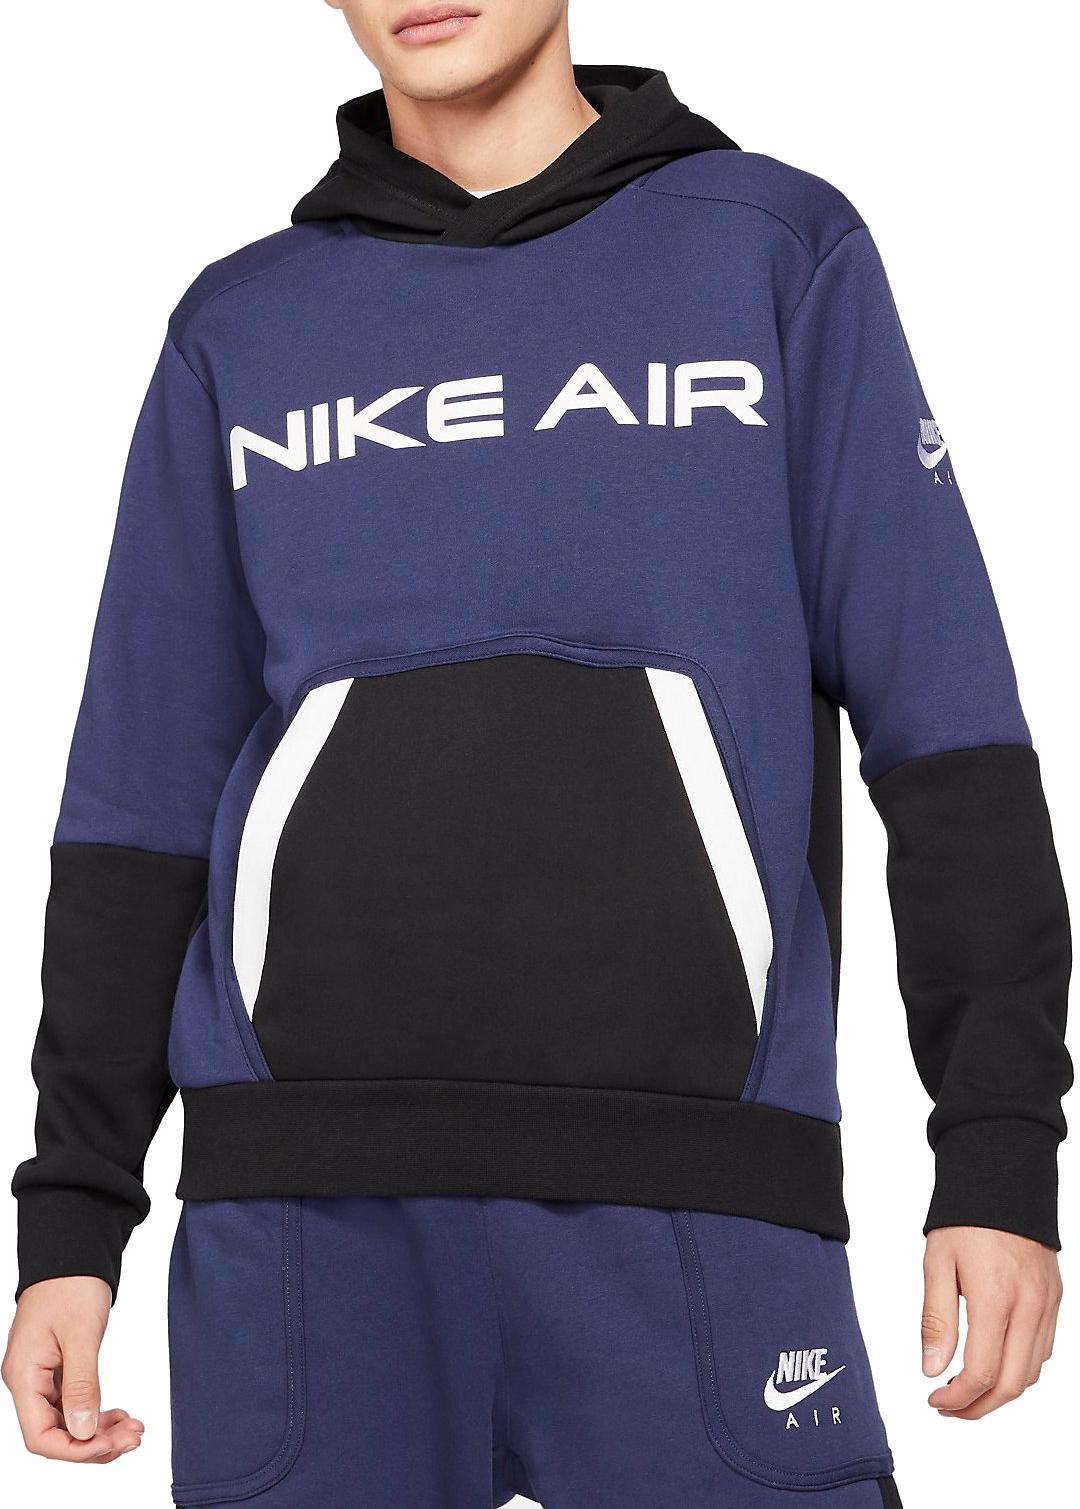 Hooded sweatshirt Nike Air Pullover 